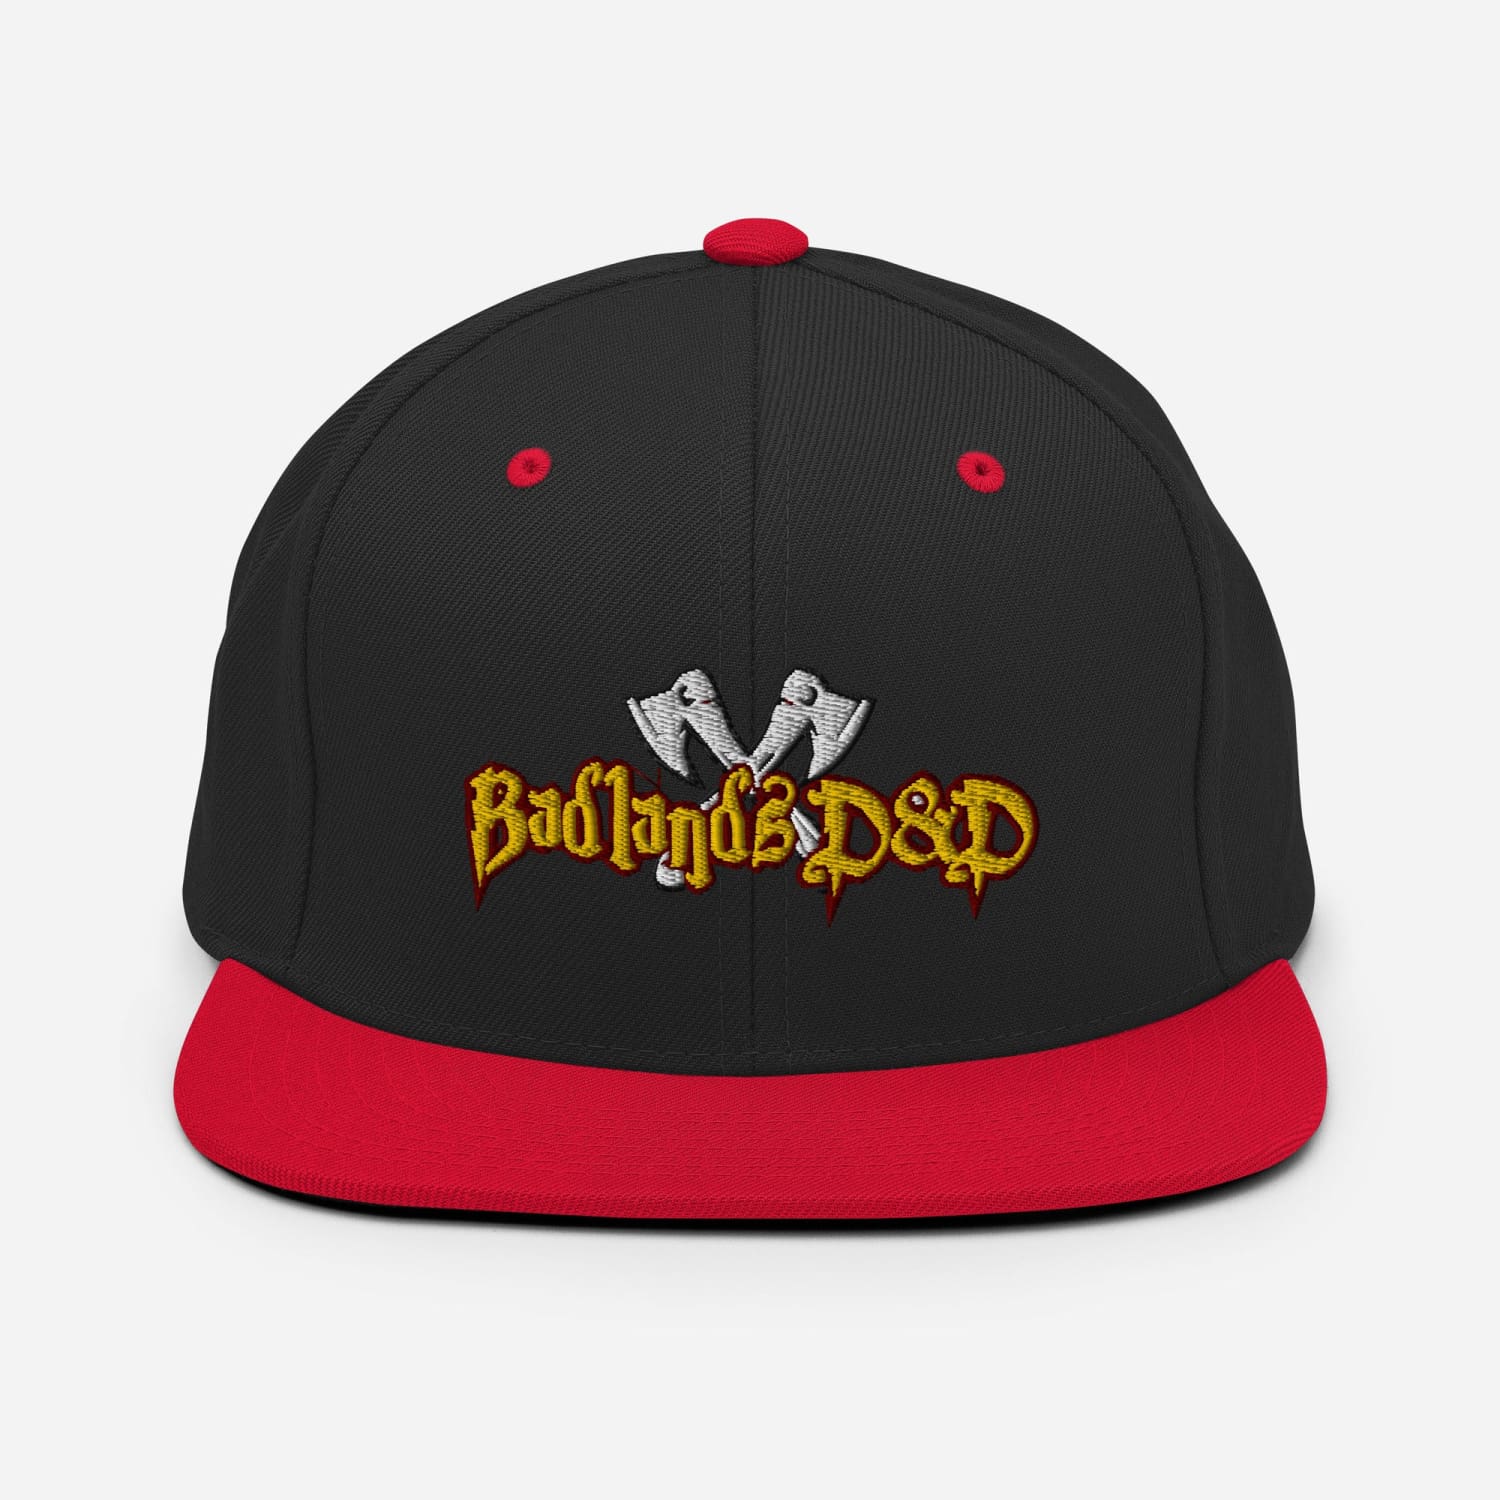 Badlands D&D Logo Classic Snapback Cap - Black/ Red